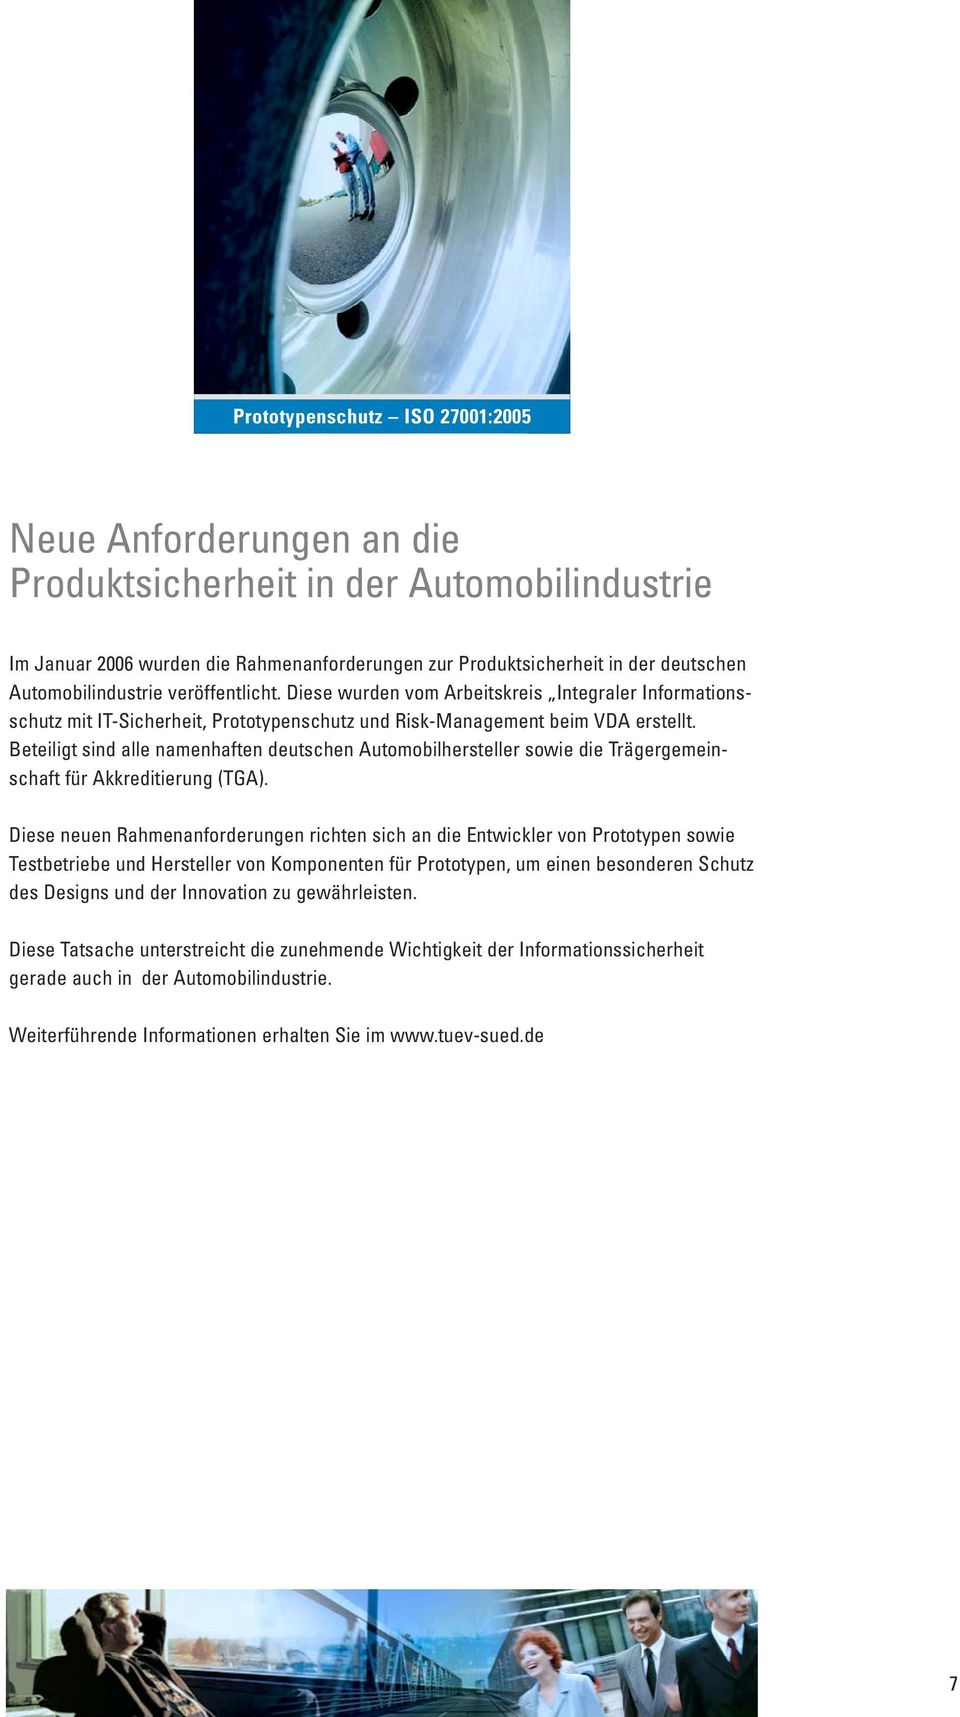 Beteiligt sind alle namenhaften deutschen Automobilhersteller sowie die Trägergemeinschaft für Akkreditierung (TGA).